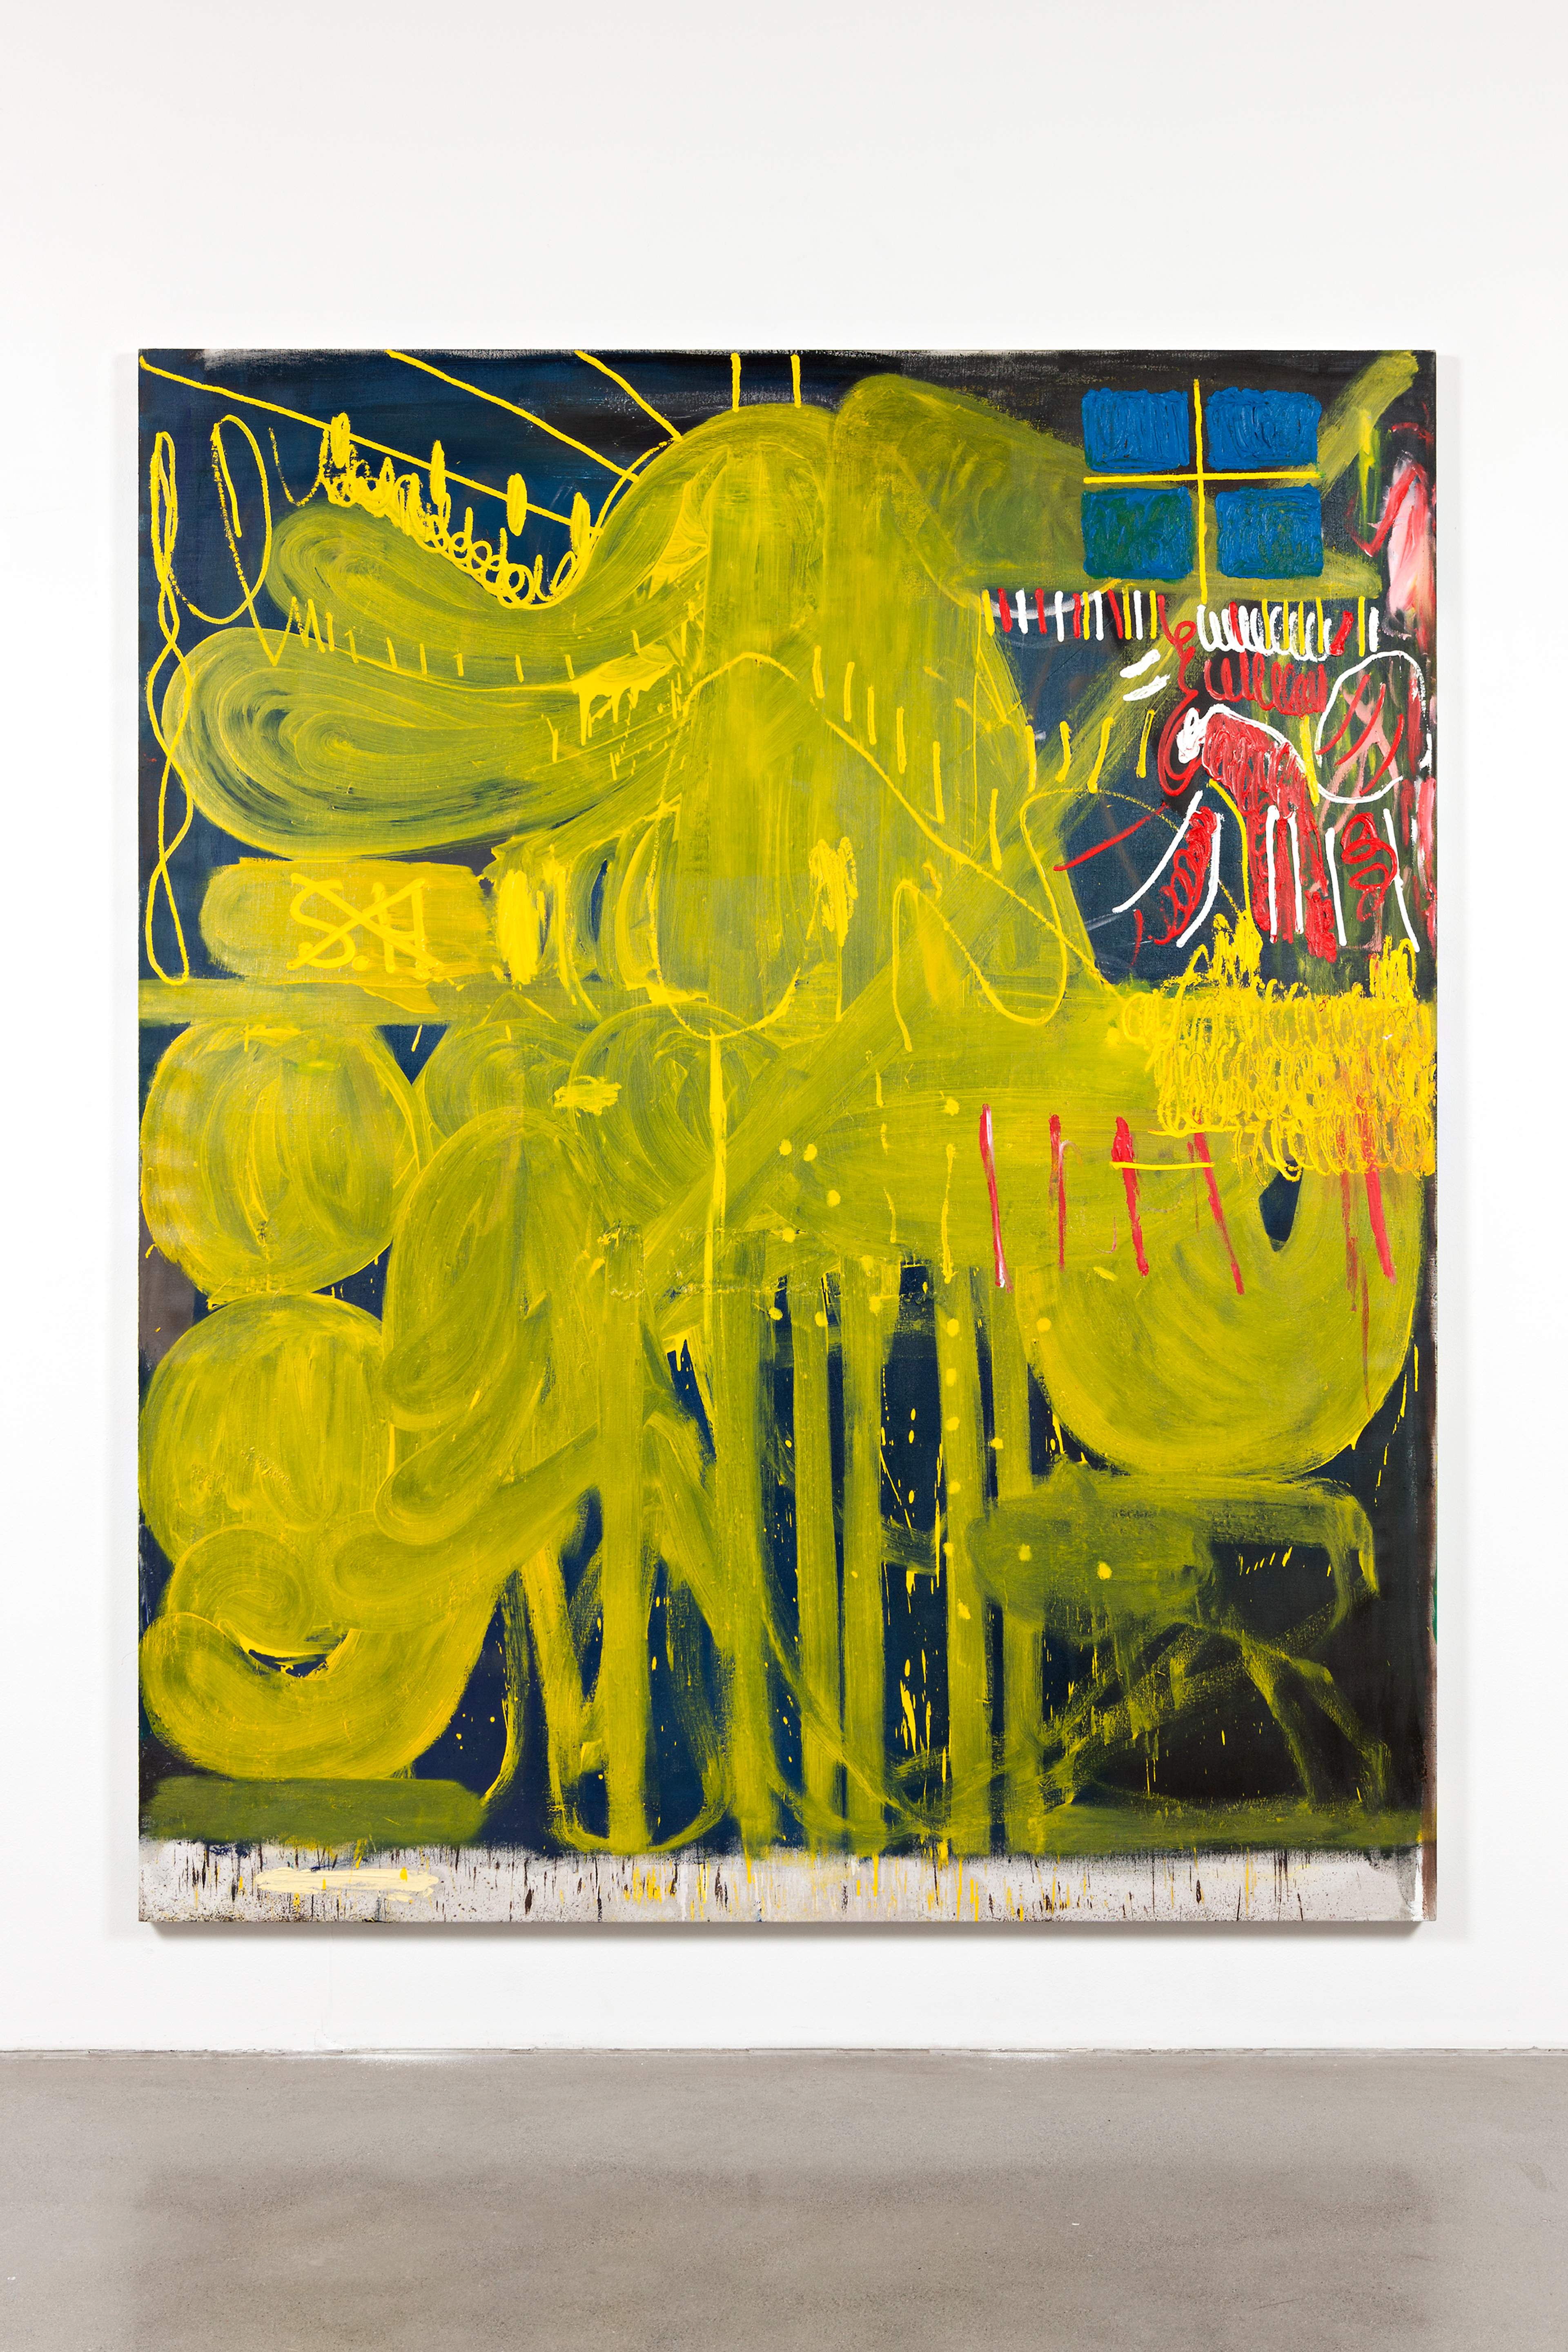 Sebastian Helling, Gimme, 2013, oil paint on linen, 220x183 cm